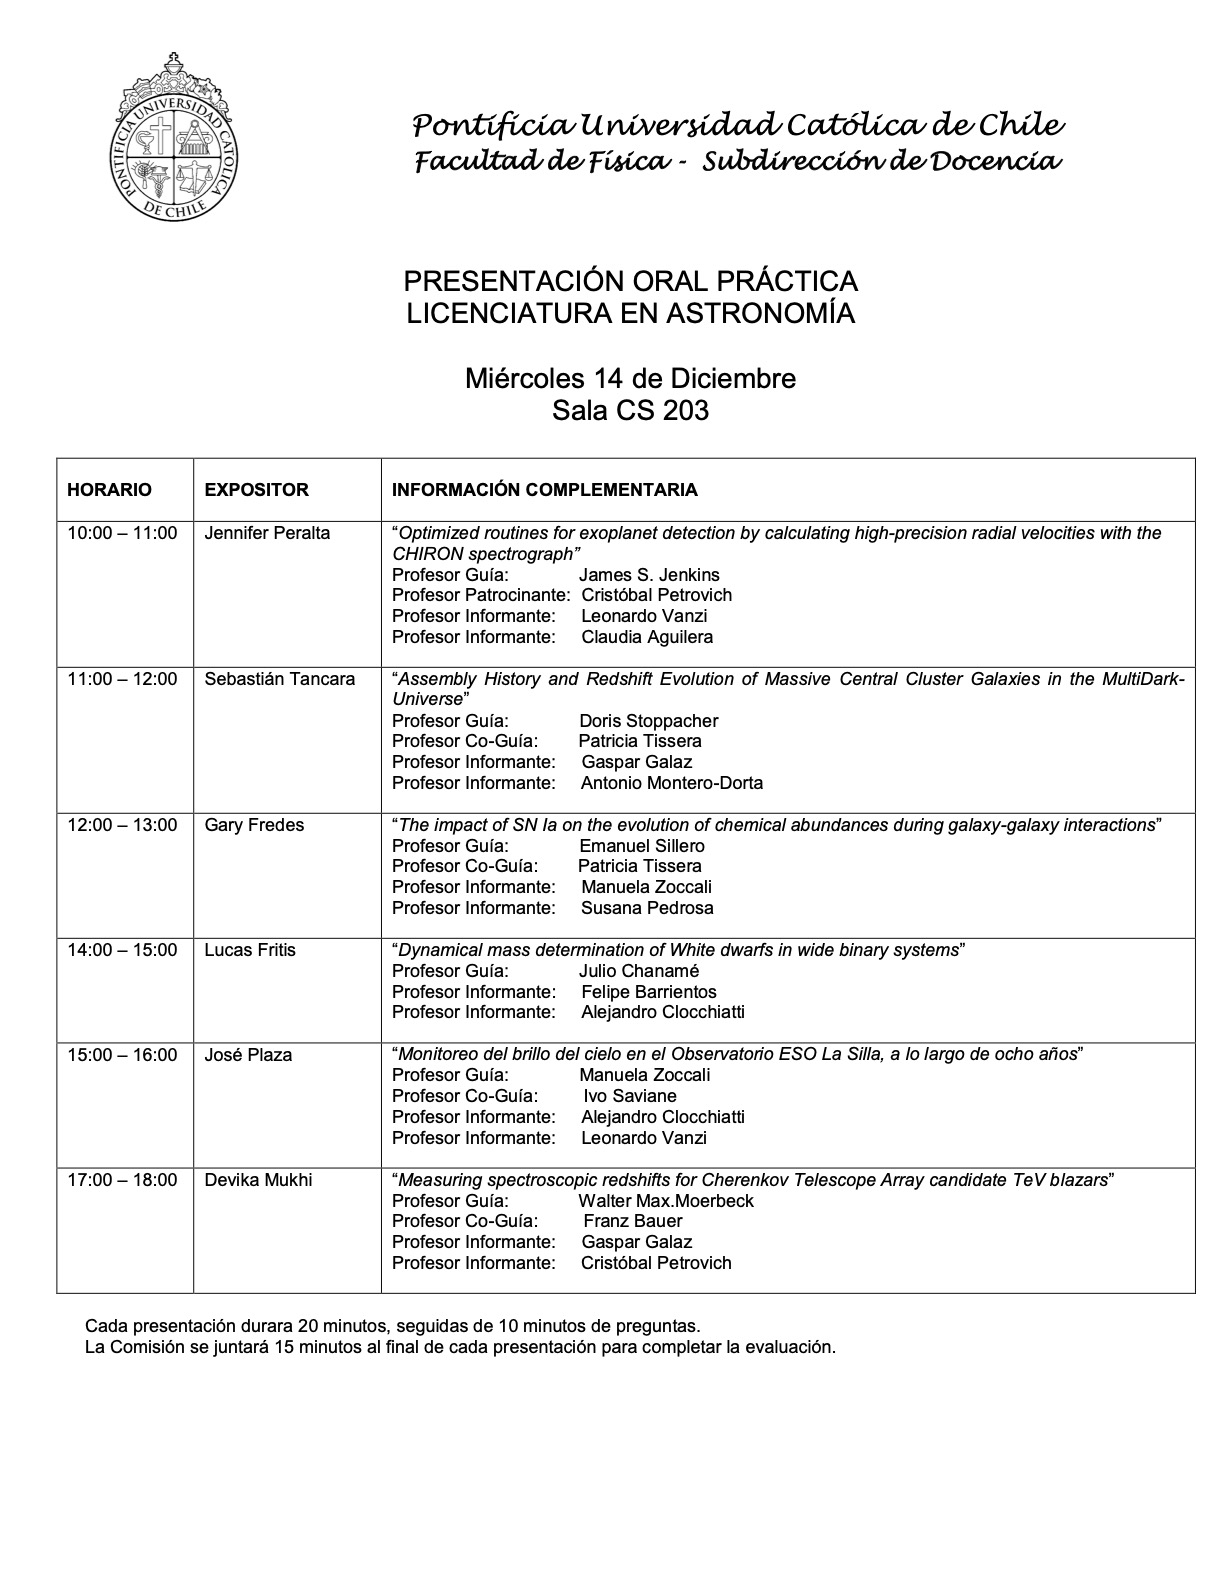 Calendario Practicas de Licenciatura IA 22022 14.12.2022 publicar